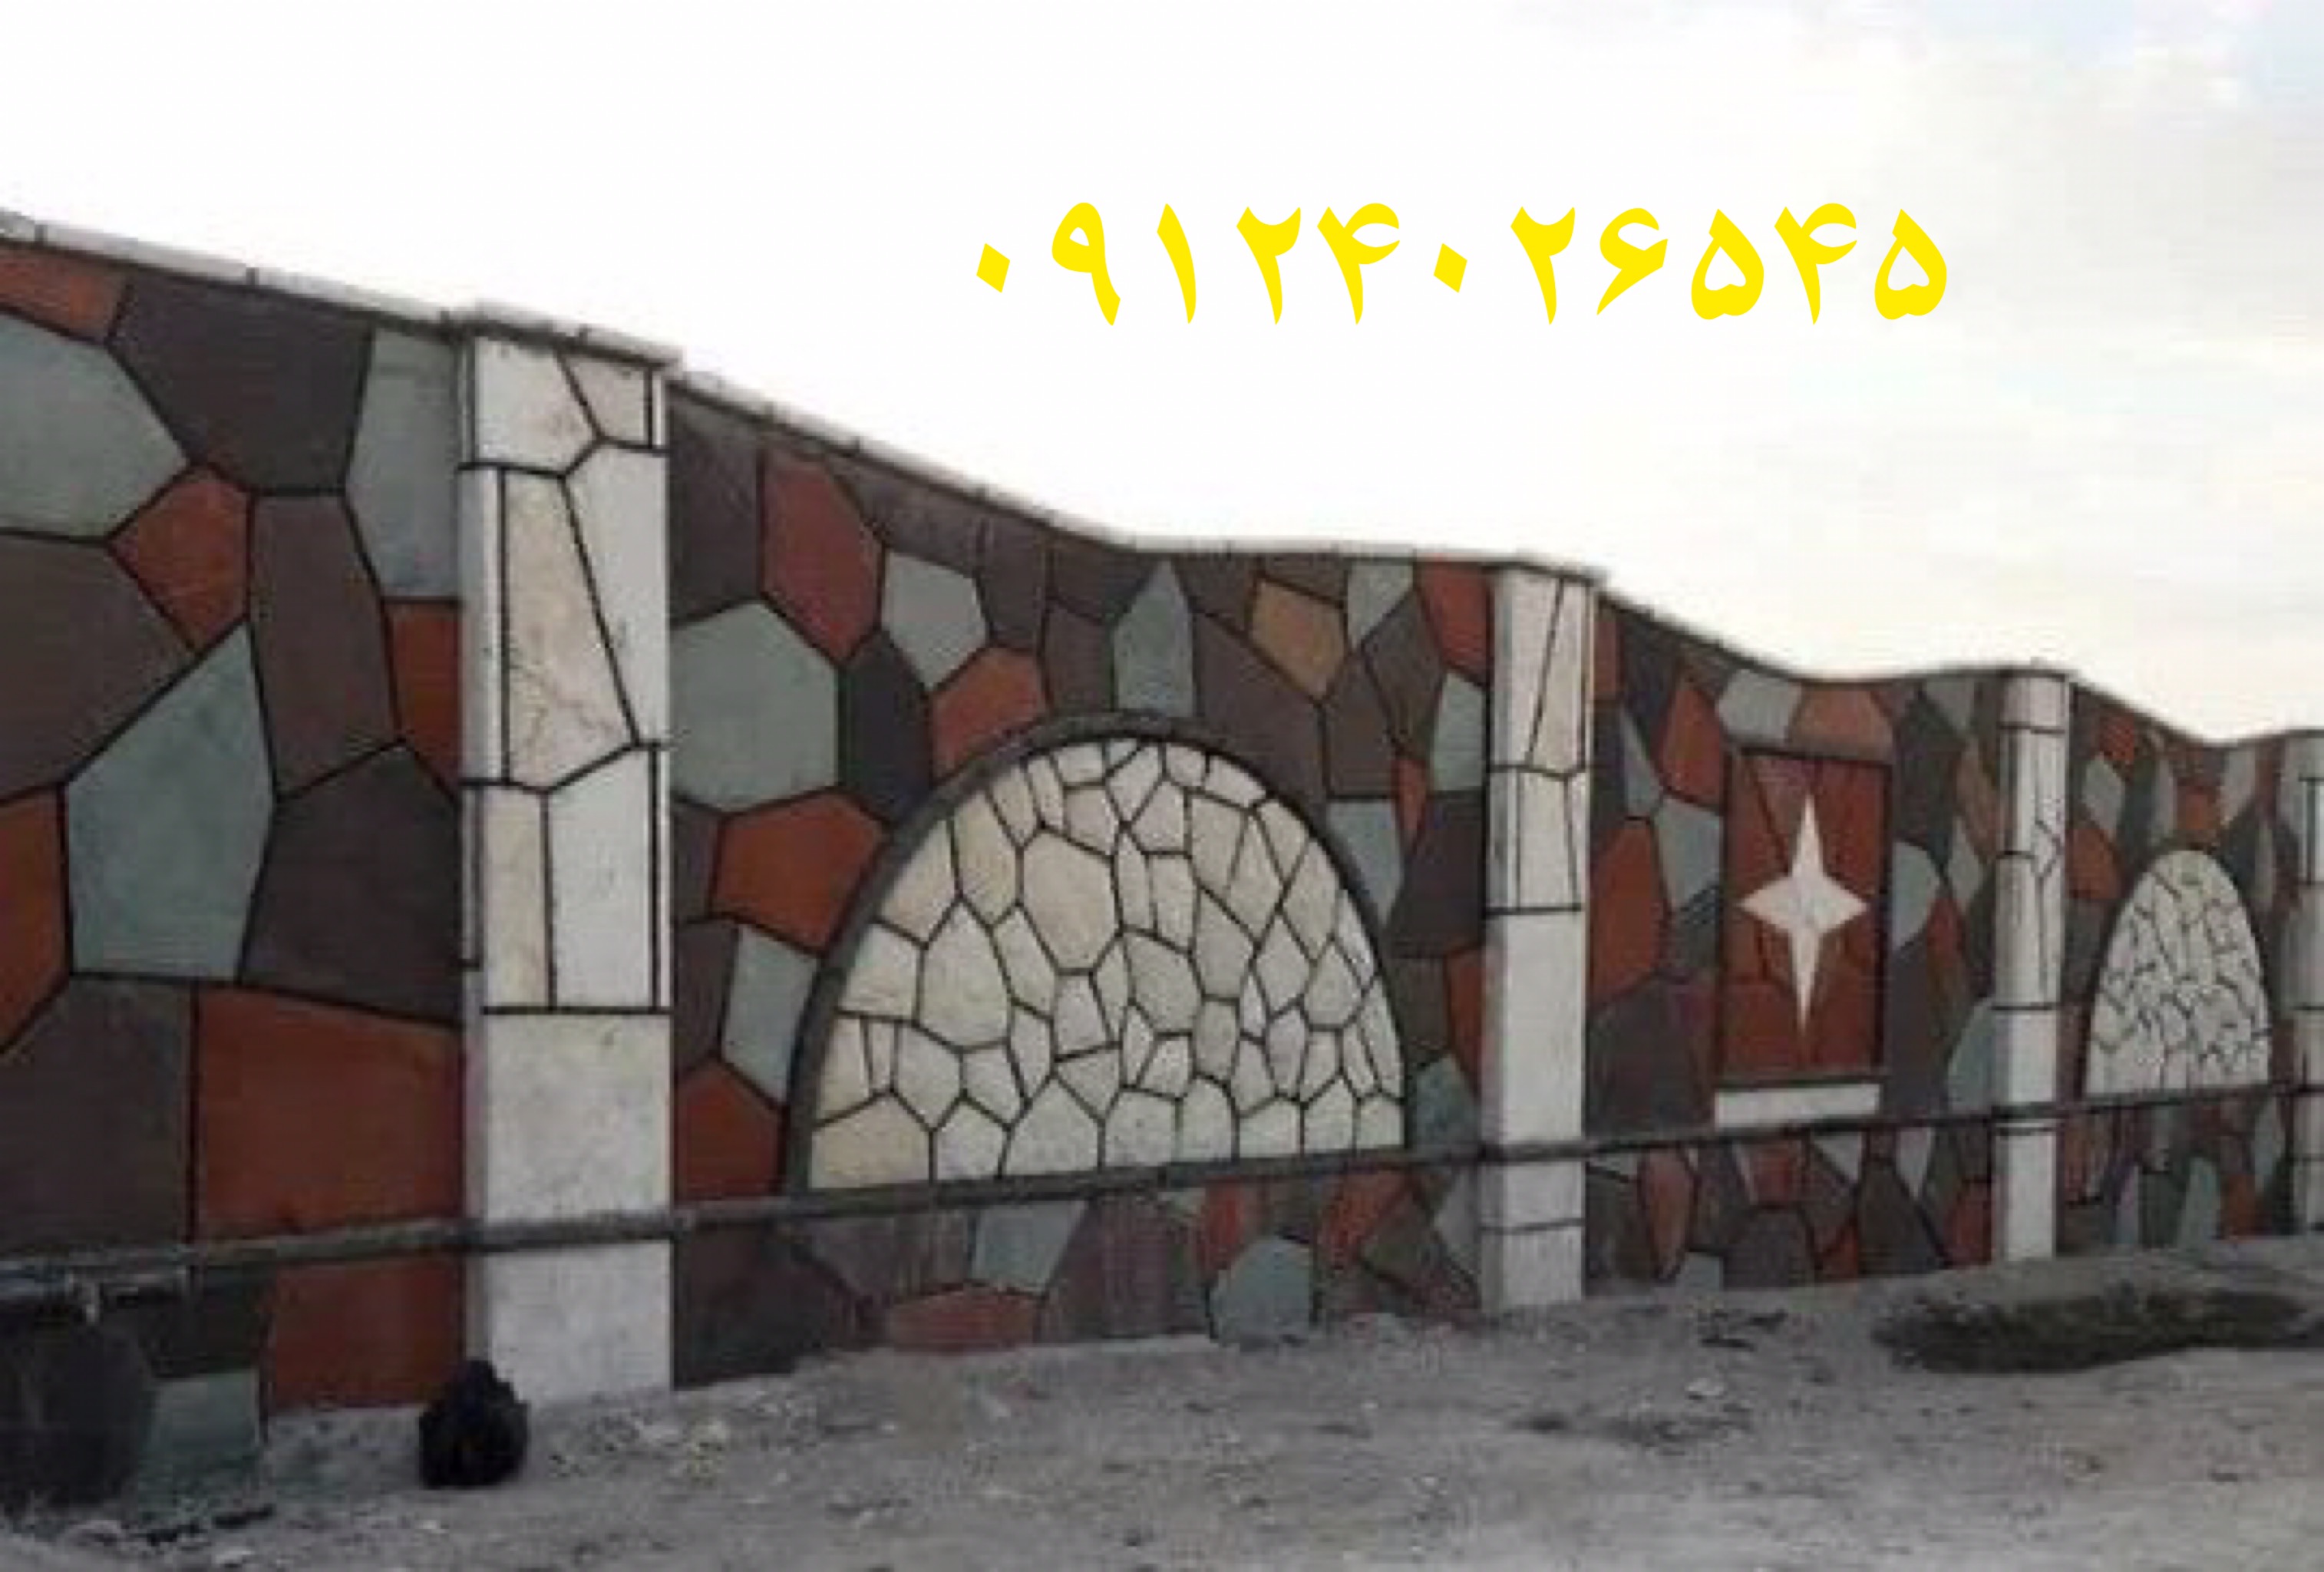 اجرای سنگ لاشه و سنگ مالون و سنگ ورقه ای  تخته سنگهای طبیعی برای نمای دیوار به سبک های جدید و برشی نصب و اجرای شده است 